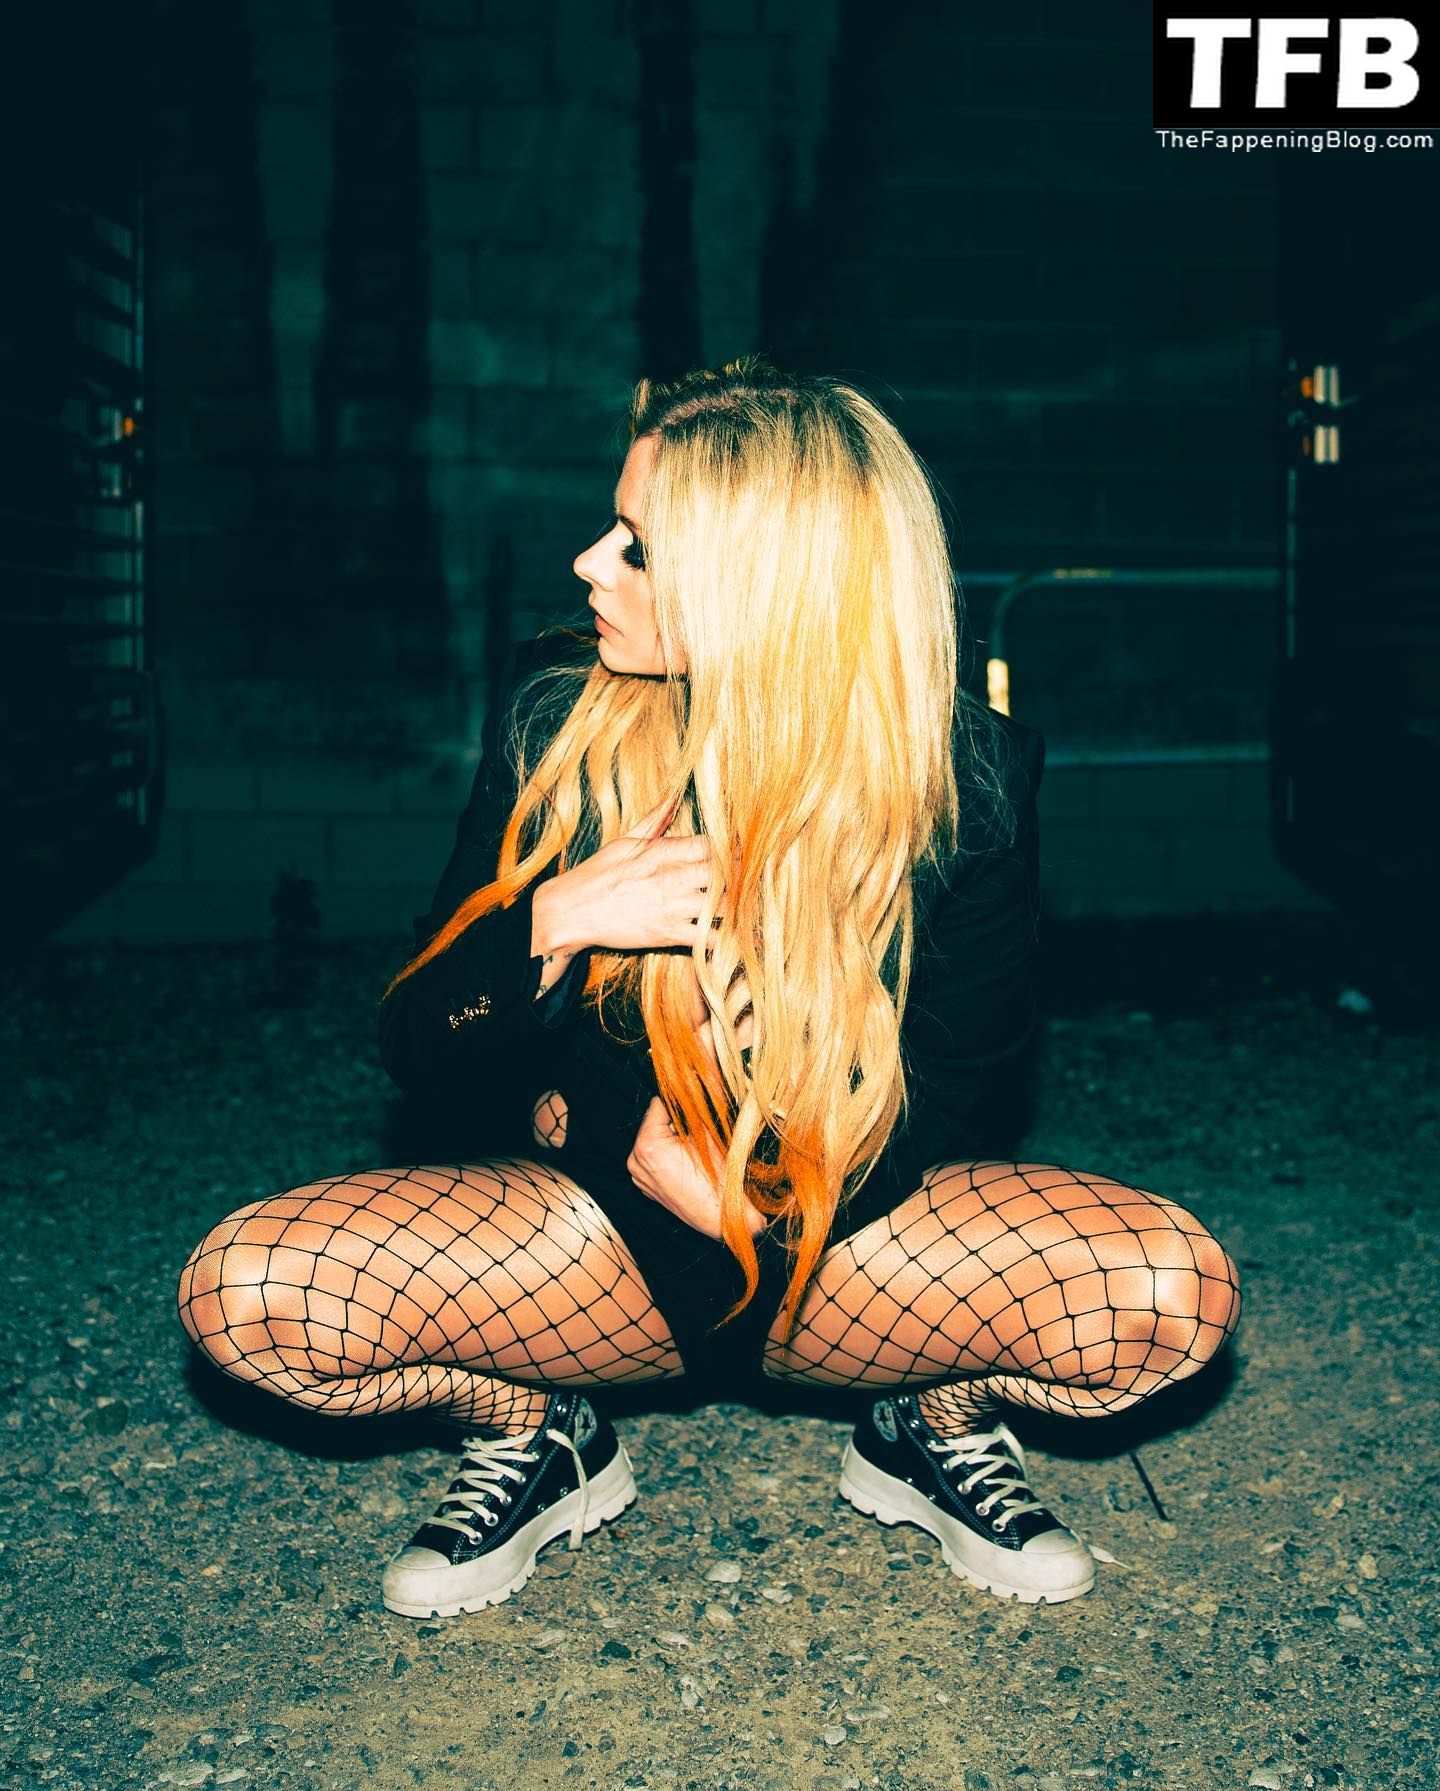 Avril-Lavigne-Braless-The-Fappening-Blog-3.jpg